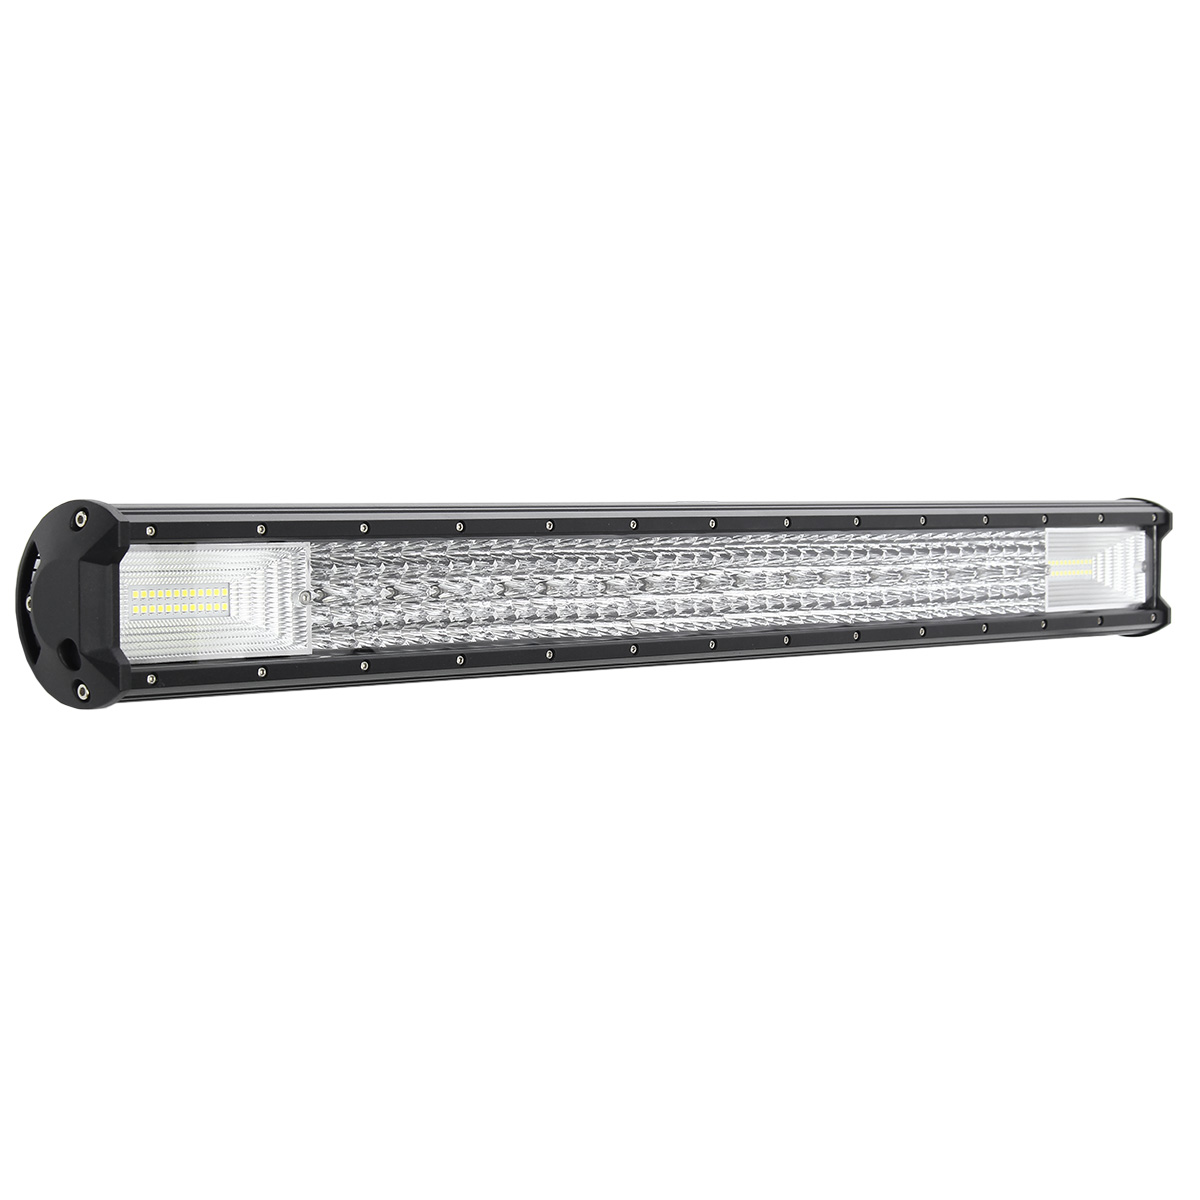 32quot-208LED-White-LED-Light-Bar-Aluminum-Alloy-Shell-Work-Light-For-ATV-Off-road-1800W-Quad-Row-1674123